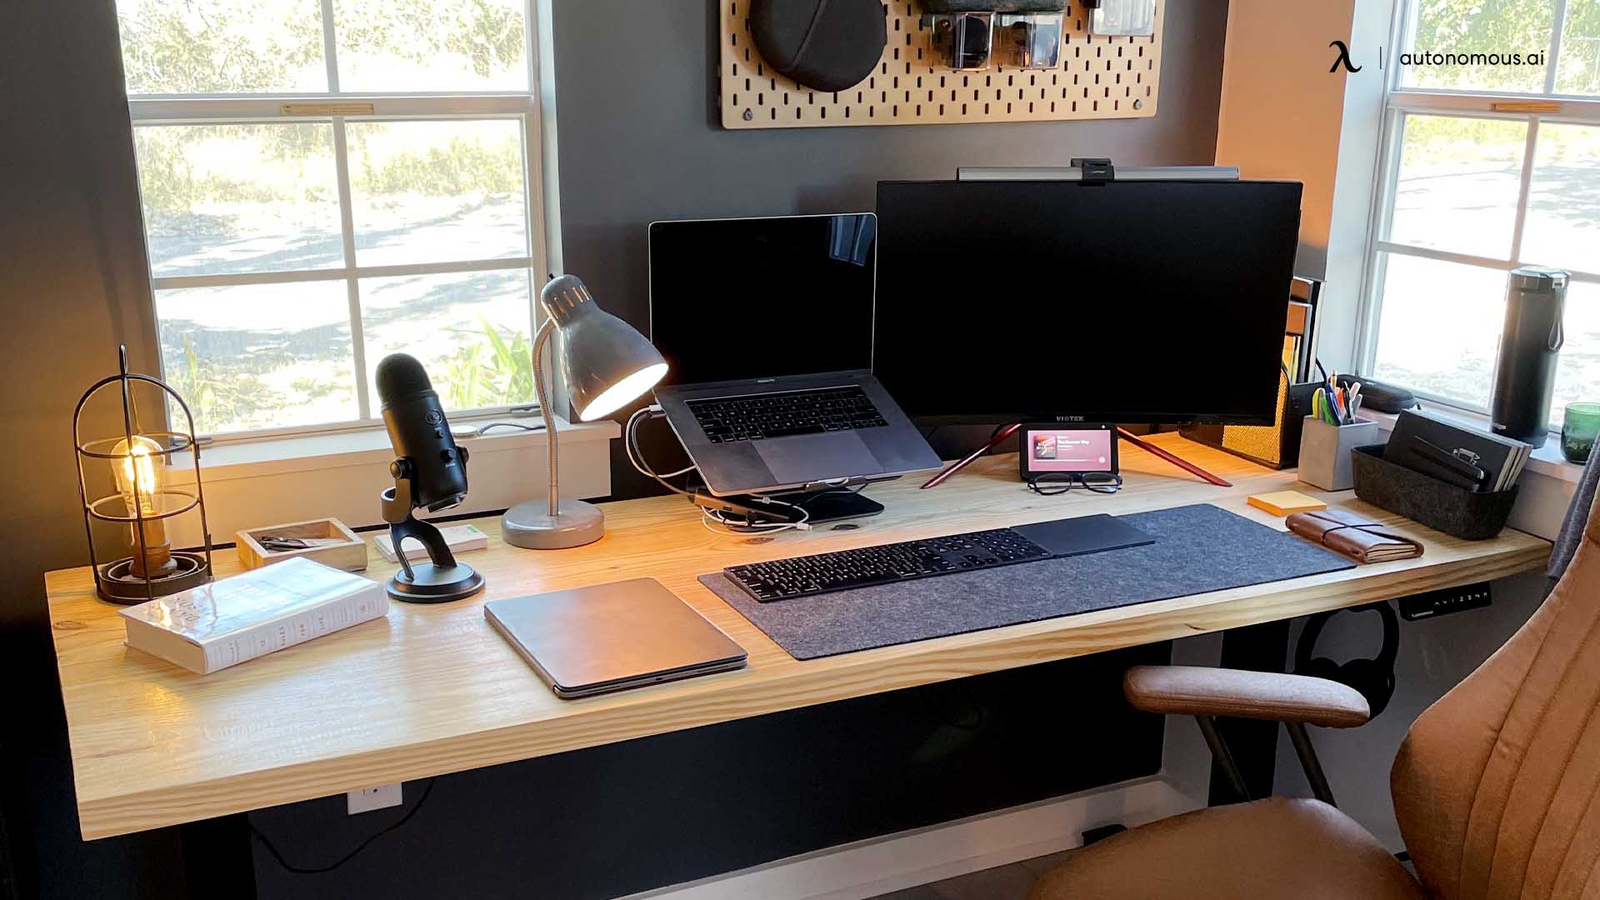 15 Best Home Office Desk For 2021, Best Executive Desks 2021